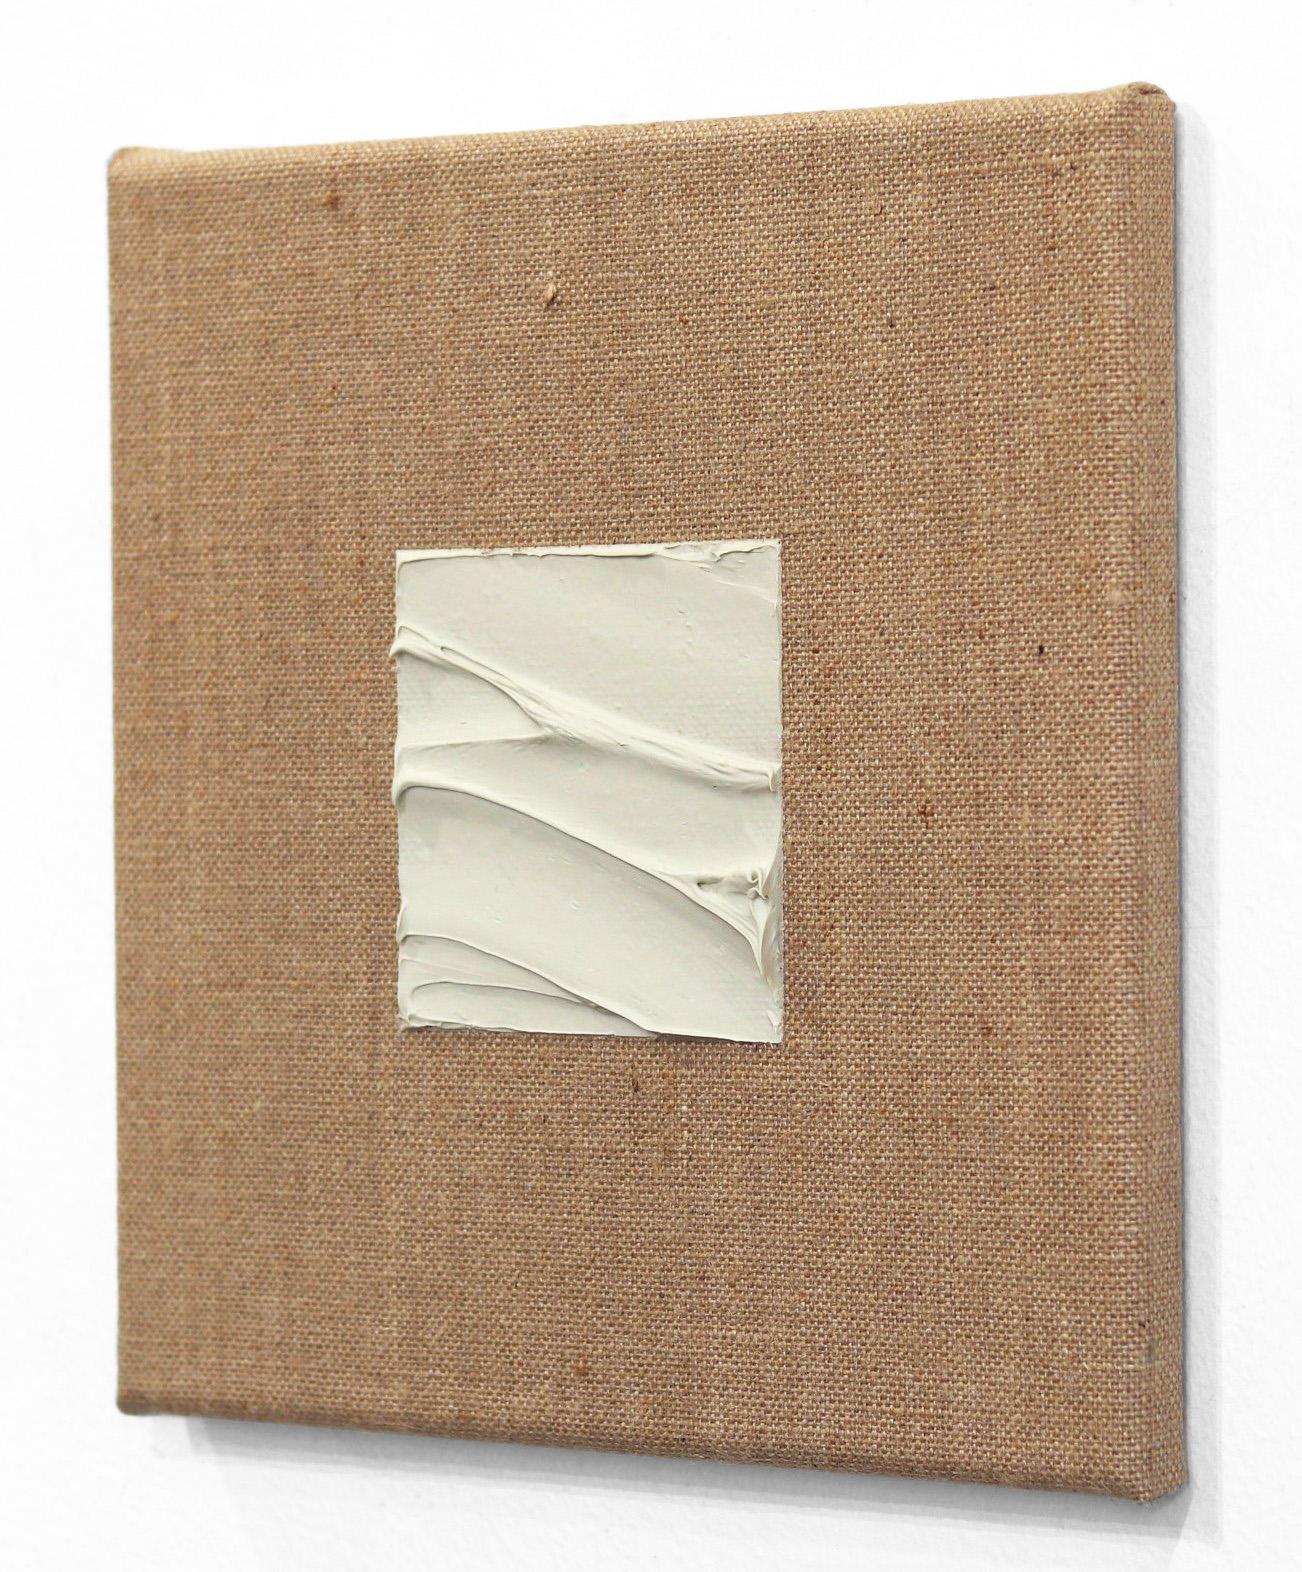 Der Künstler Len Klikunas malt, um die erlebte Realität durch visuelle Wahrnehmung zu verändern. Klikunas konzentriert sich auf die größere Idee, die hinter seinen originellen abstrakten minimalistischen Kunstwerken steht. Das Werk zeichnet sich